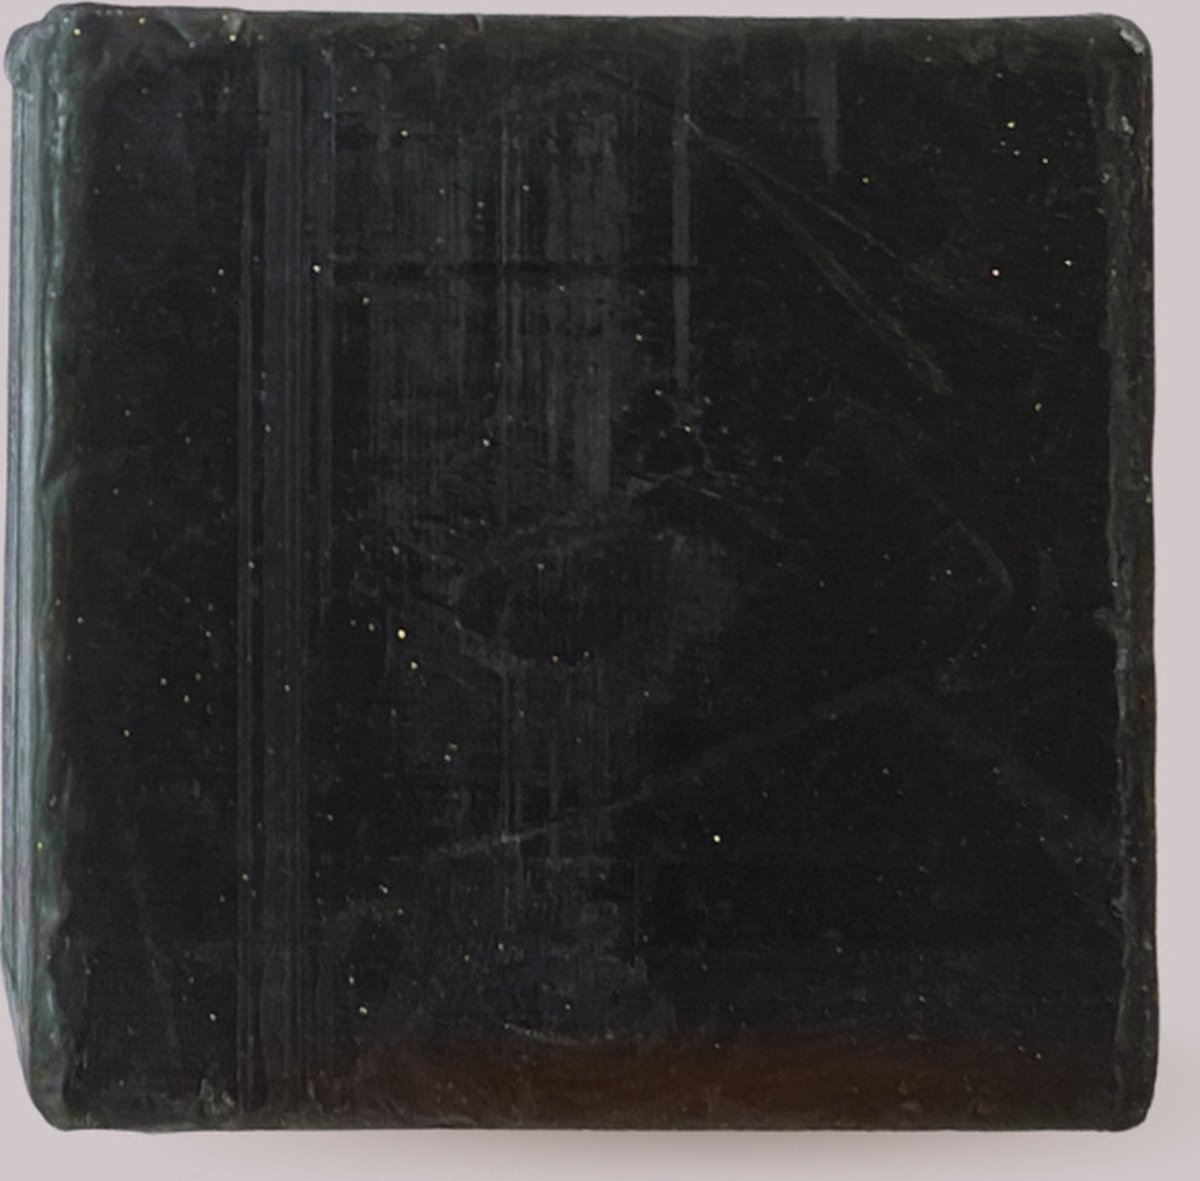 Zwarte zeep met geactiveerde houtskool kristallen - Blok van 40 gram met actieve kool - Tegen puistjes en meeëters